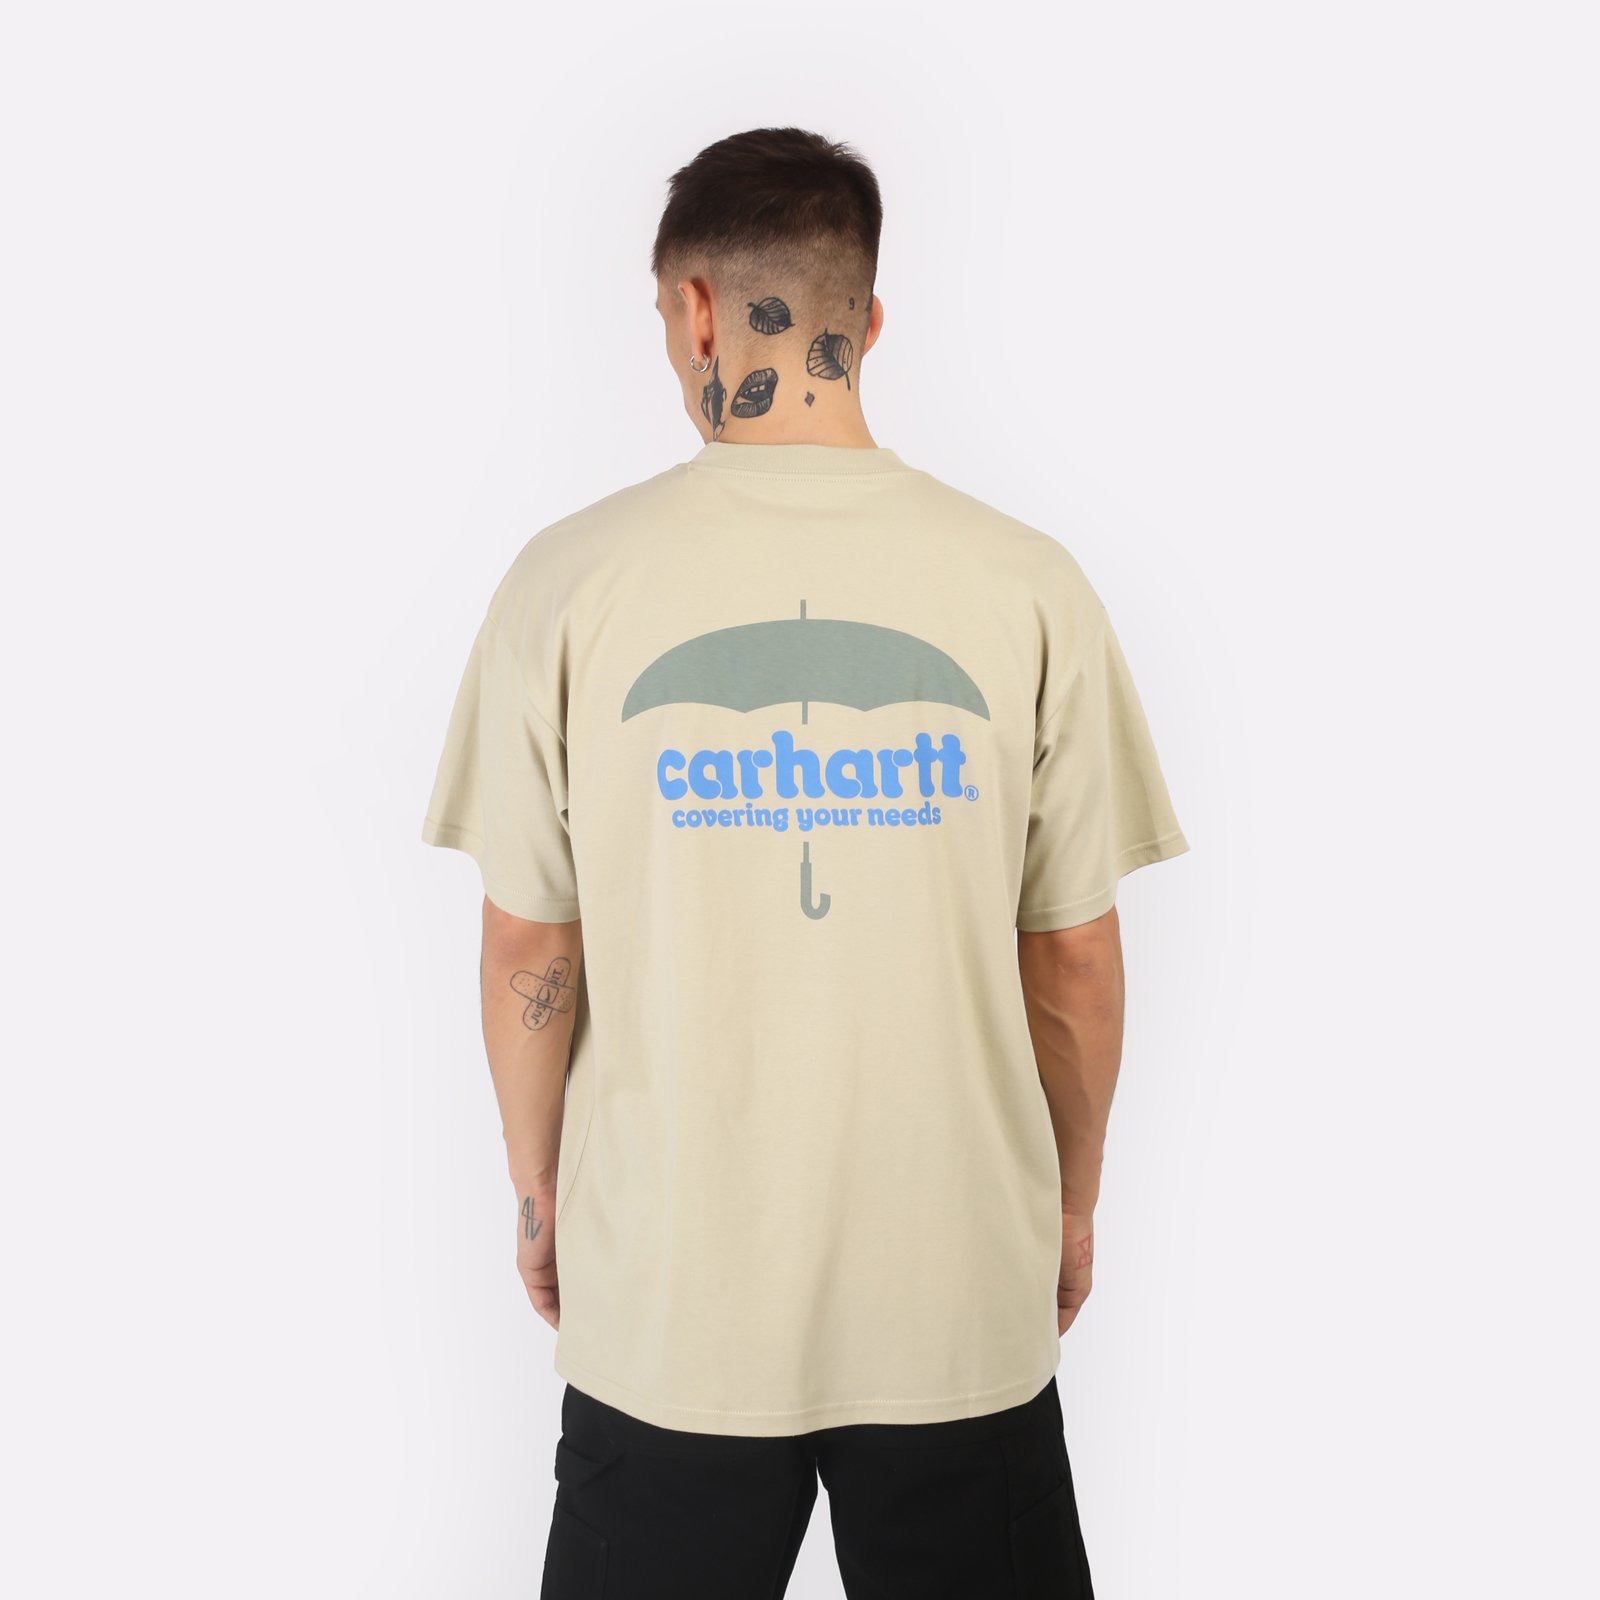 мужская бежевая футболка Carhartt WIP S/S Covers T-Shirt I033165-beryl - цена, описание, фото 2